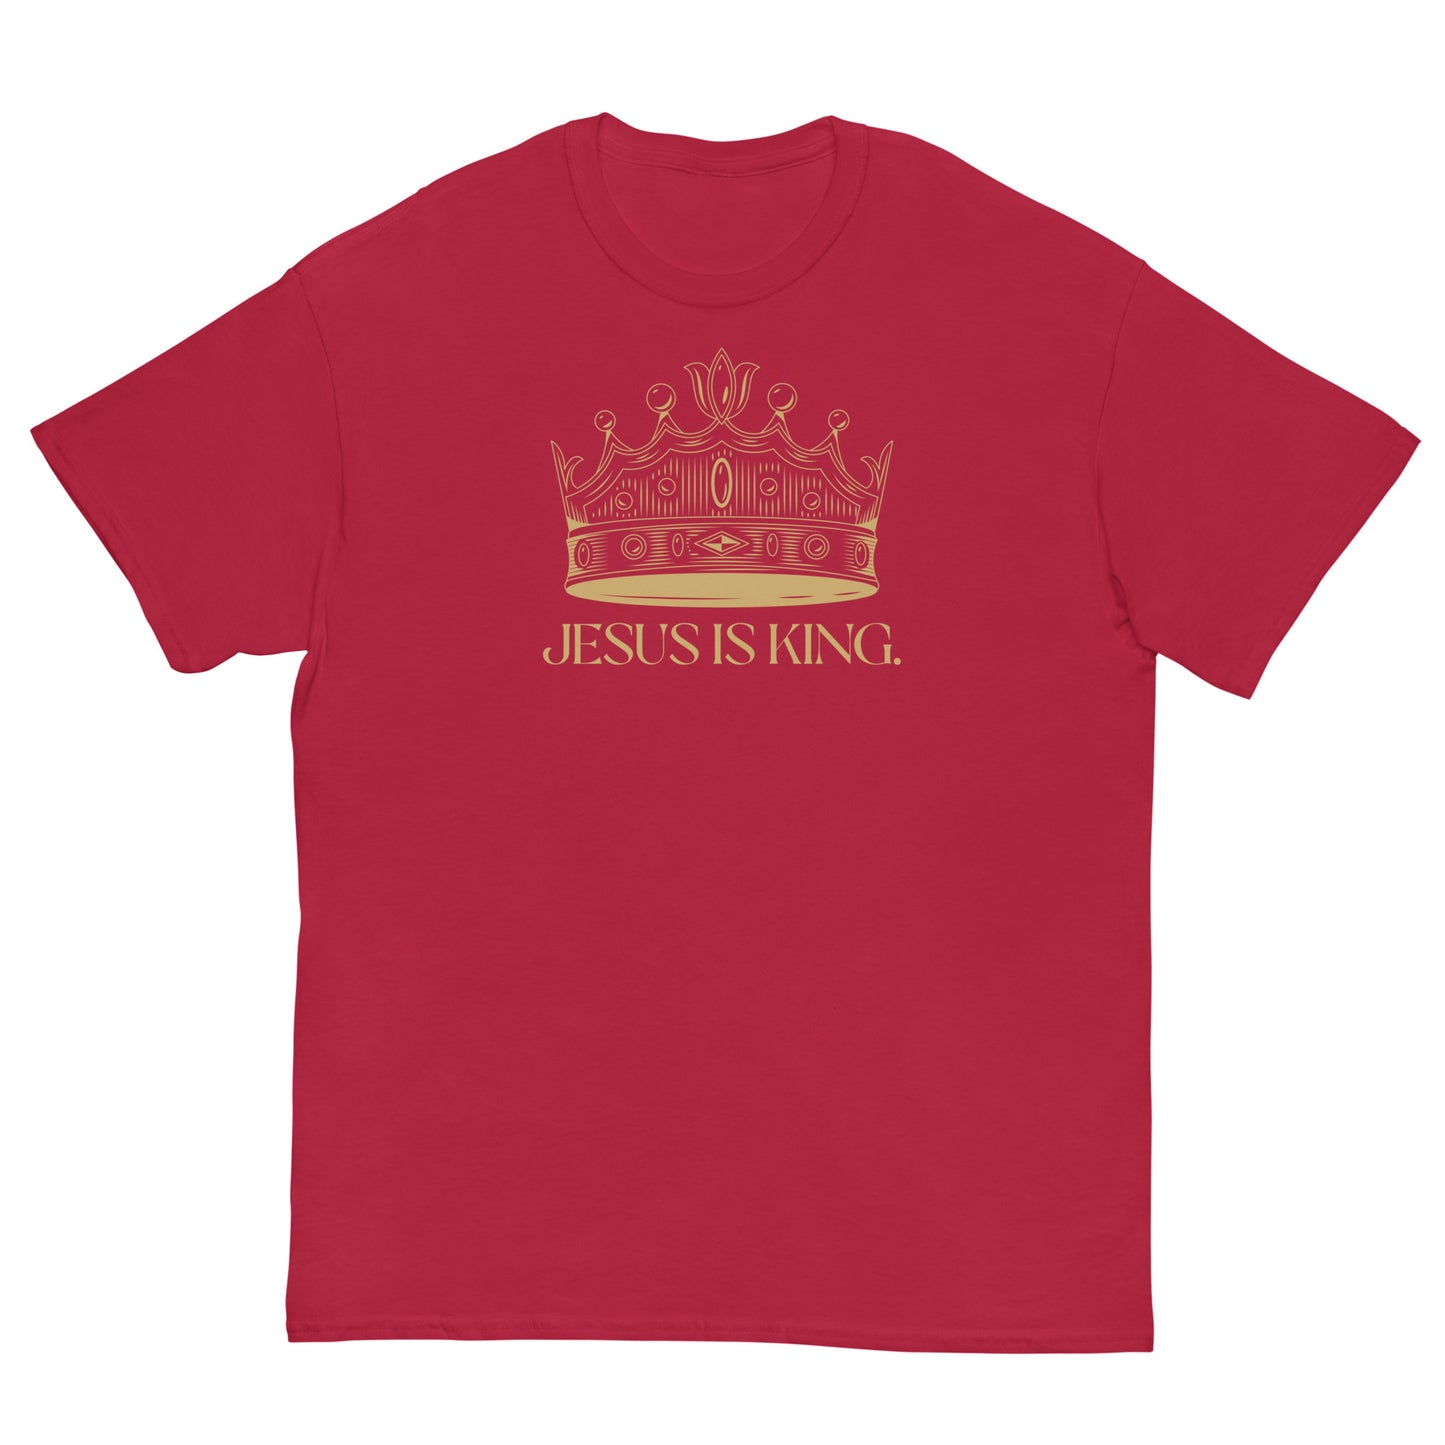 Jesus is KING 3.0 - Men's classic tee